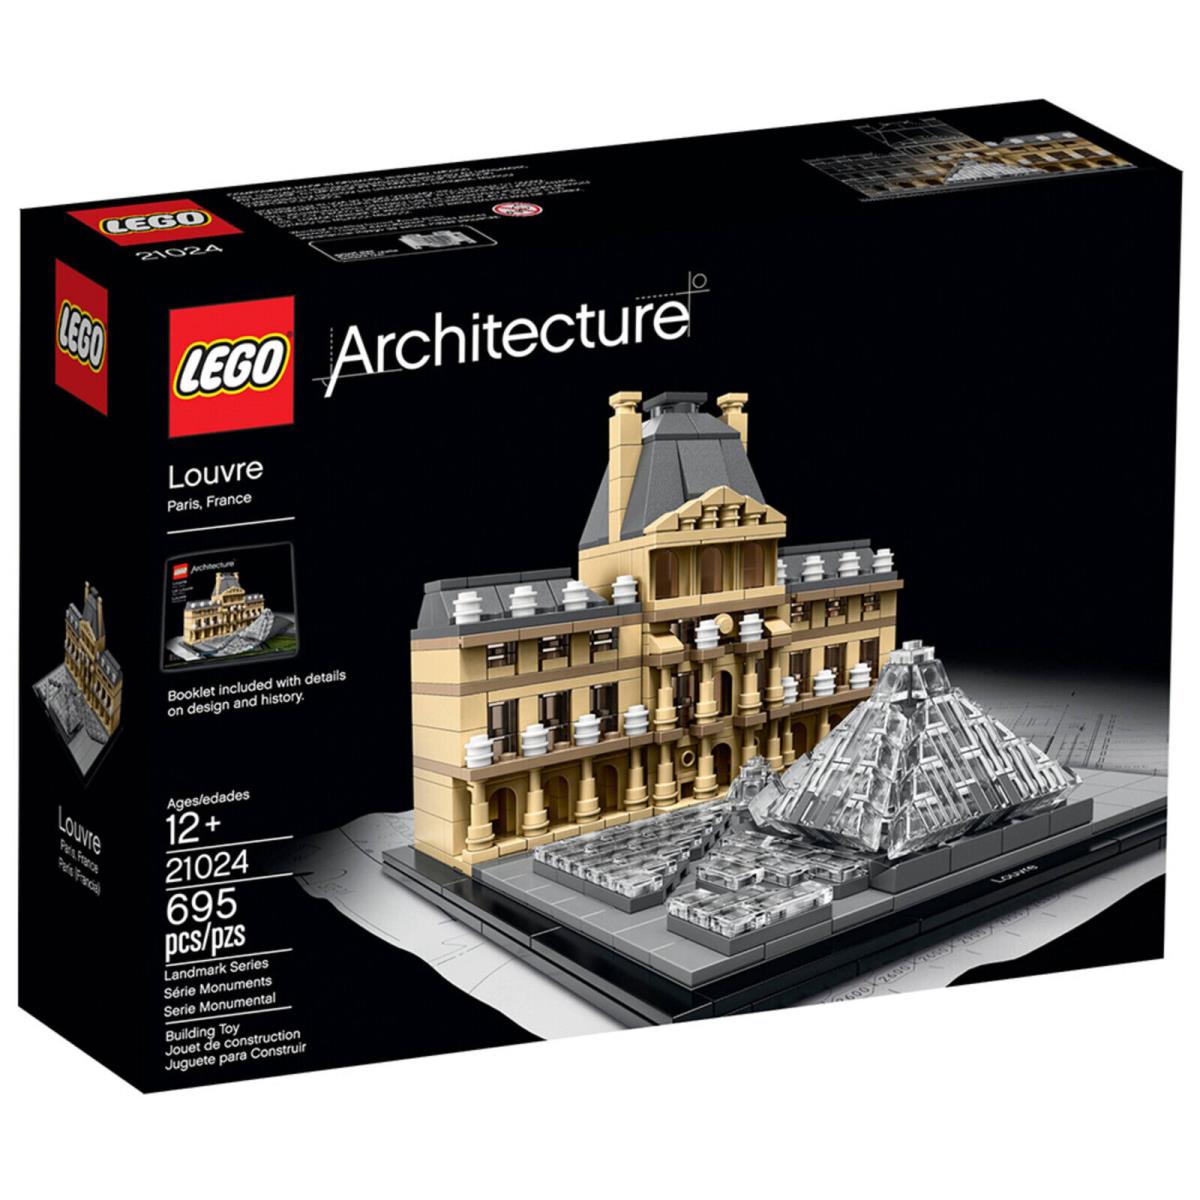 Lego Architecture Louvre Paris France 21024 Building